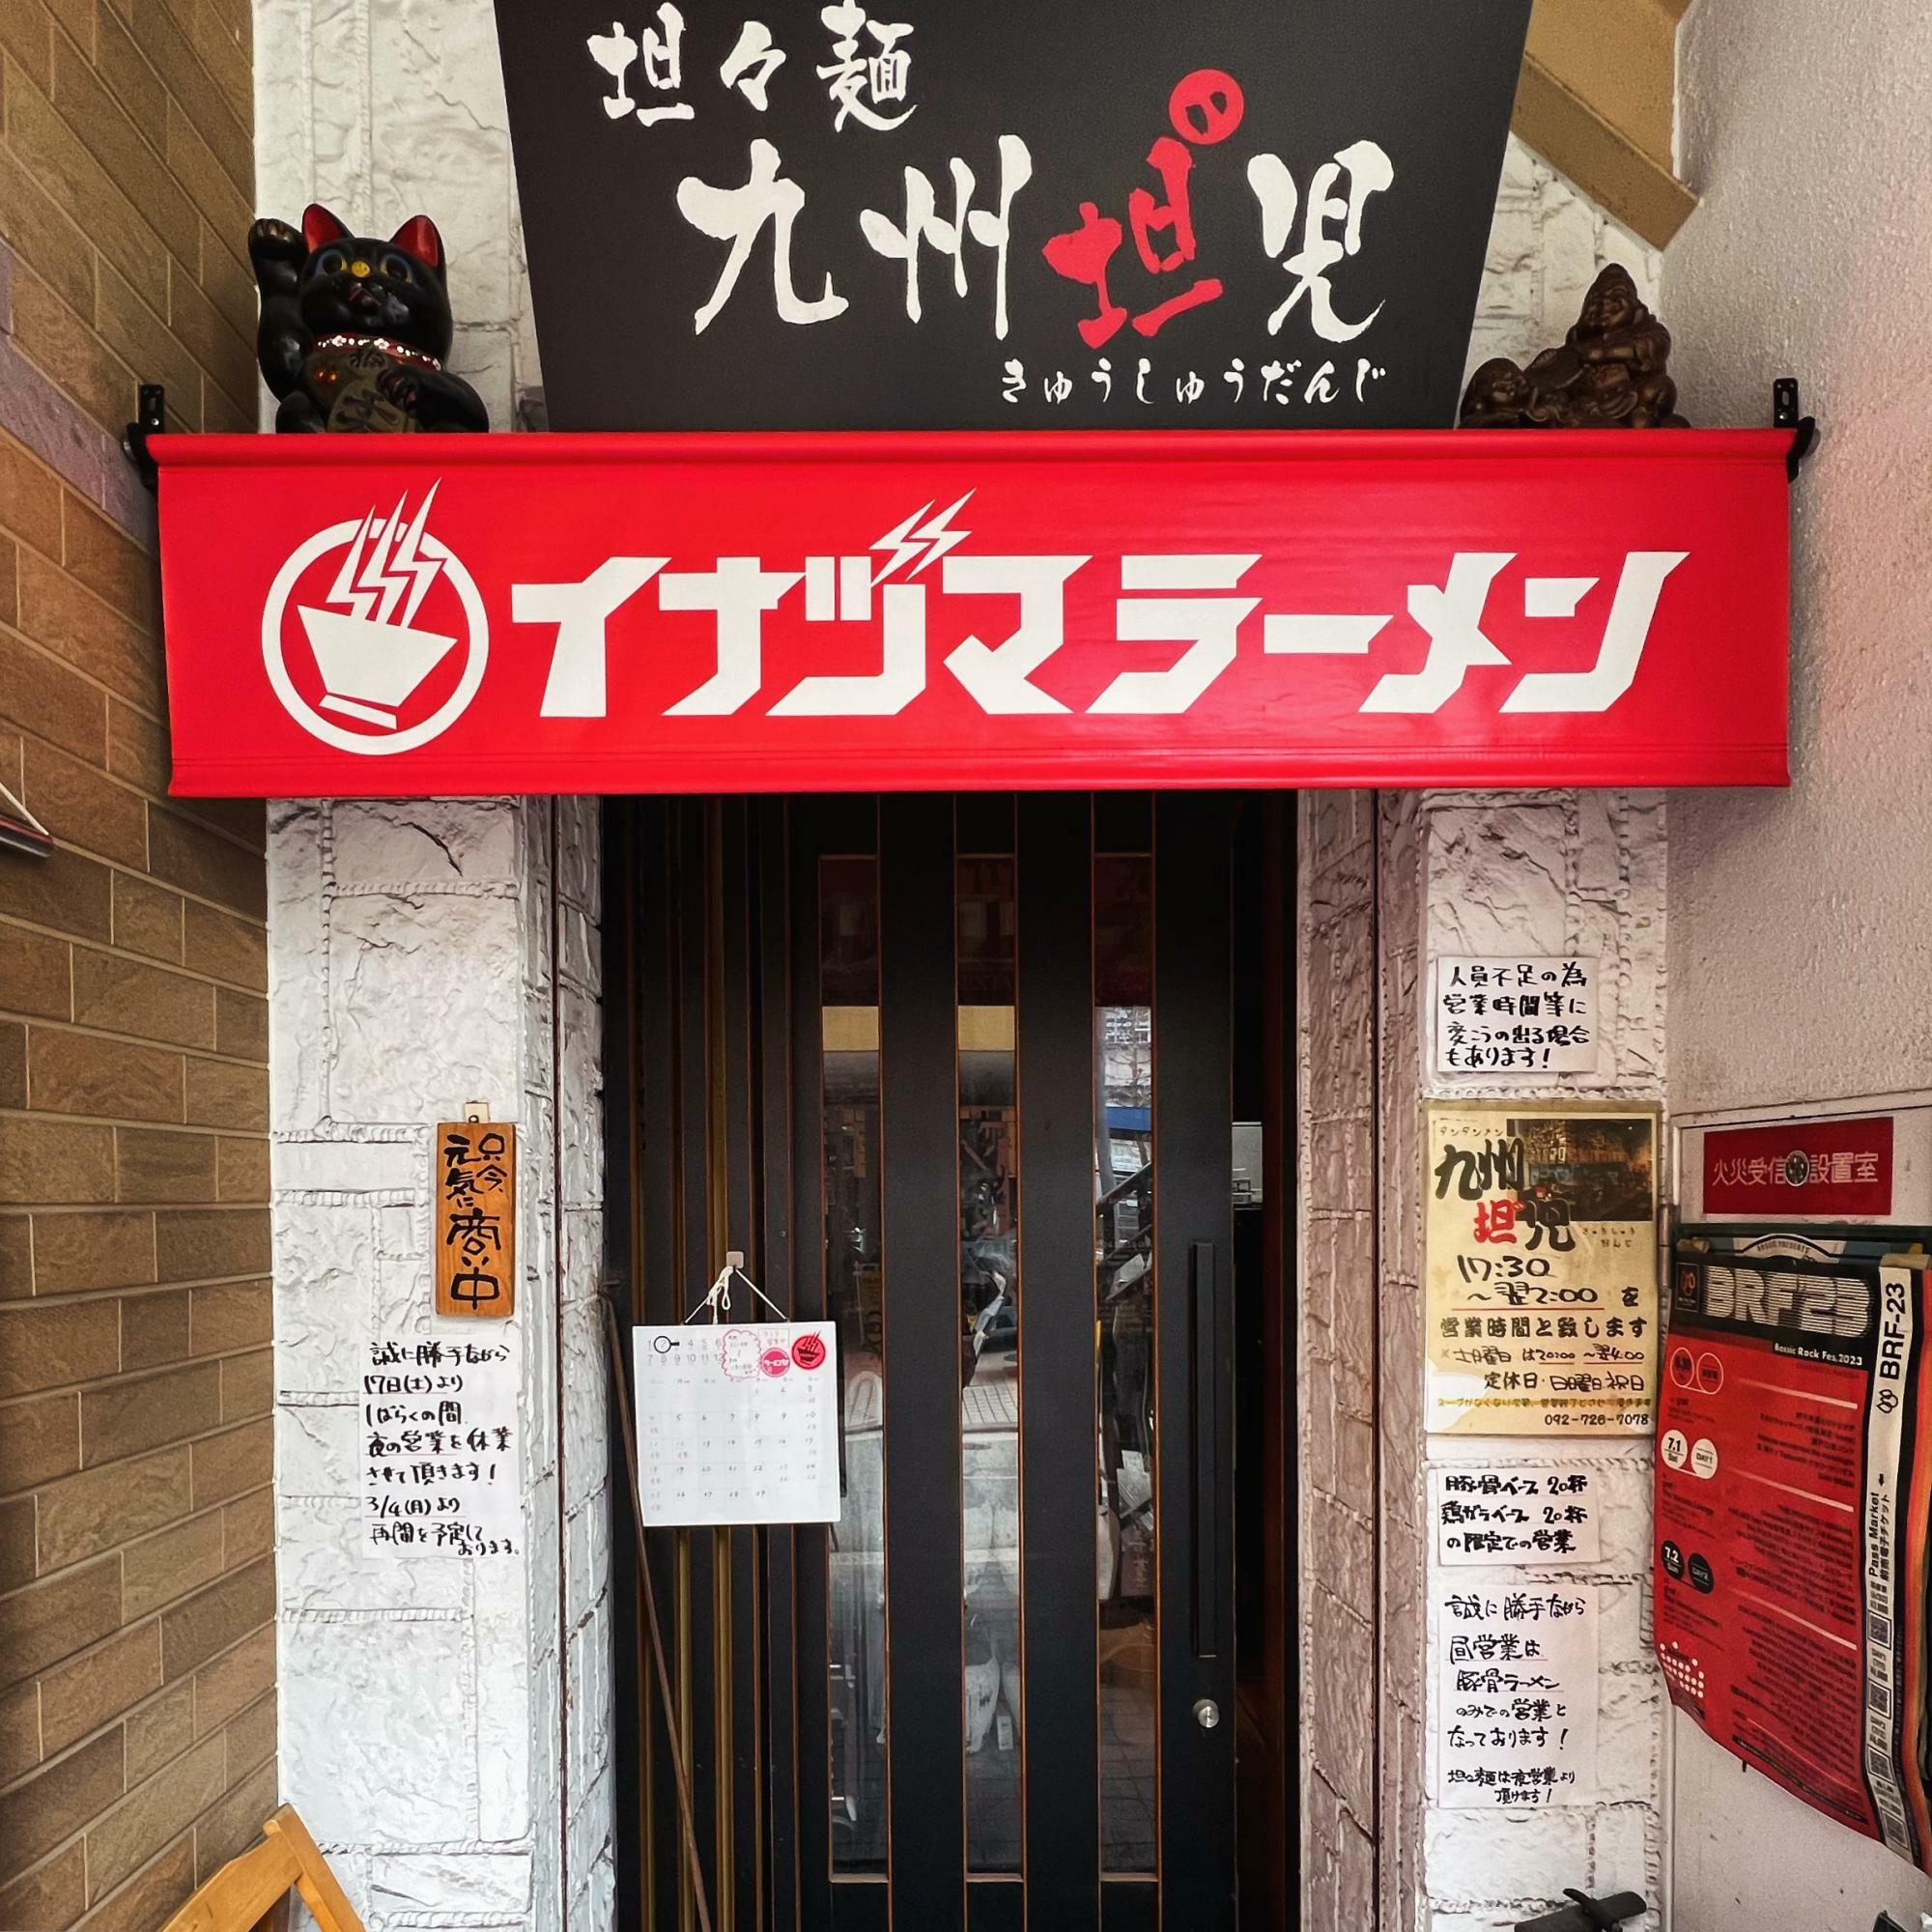 担々麺のお店「九州担〝児」のお昼の時間帯のみ間借り営業中の〈イナヅマラーメン舞鶴店〉の外観。